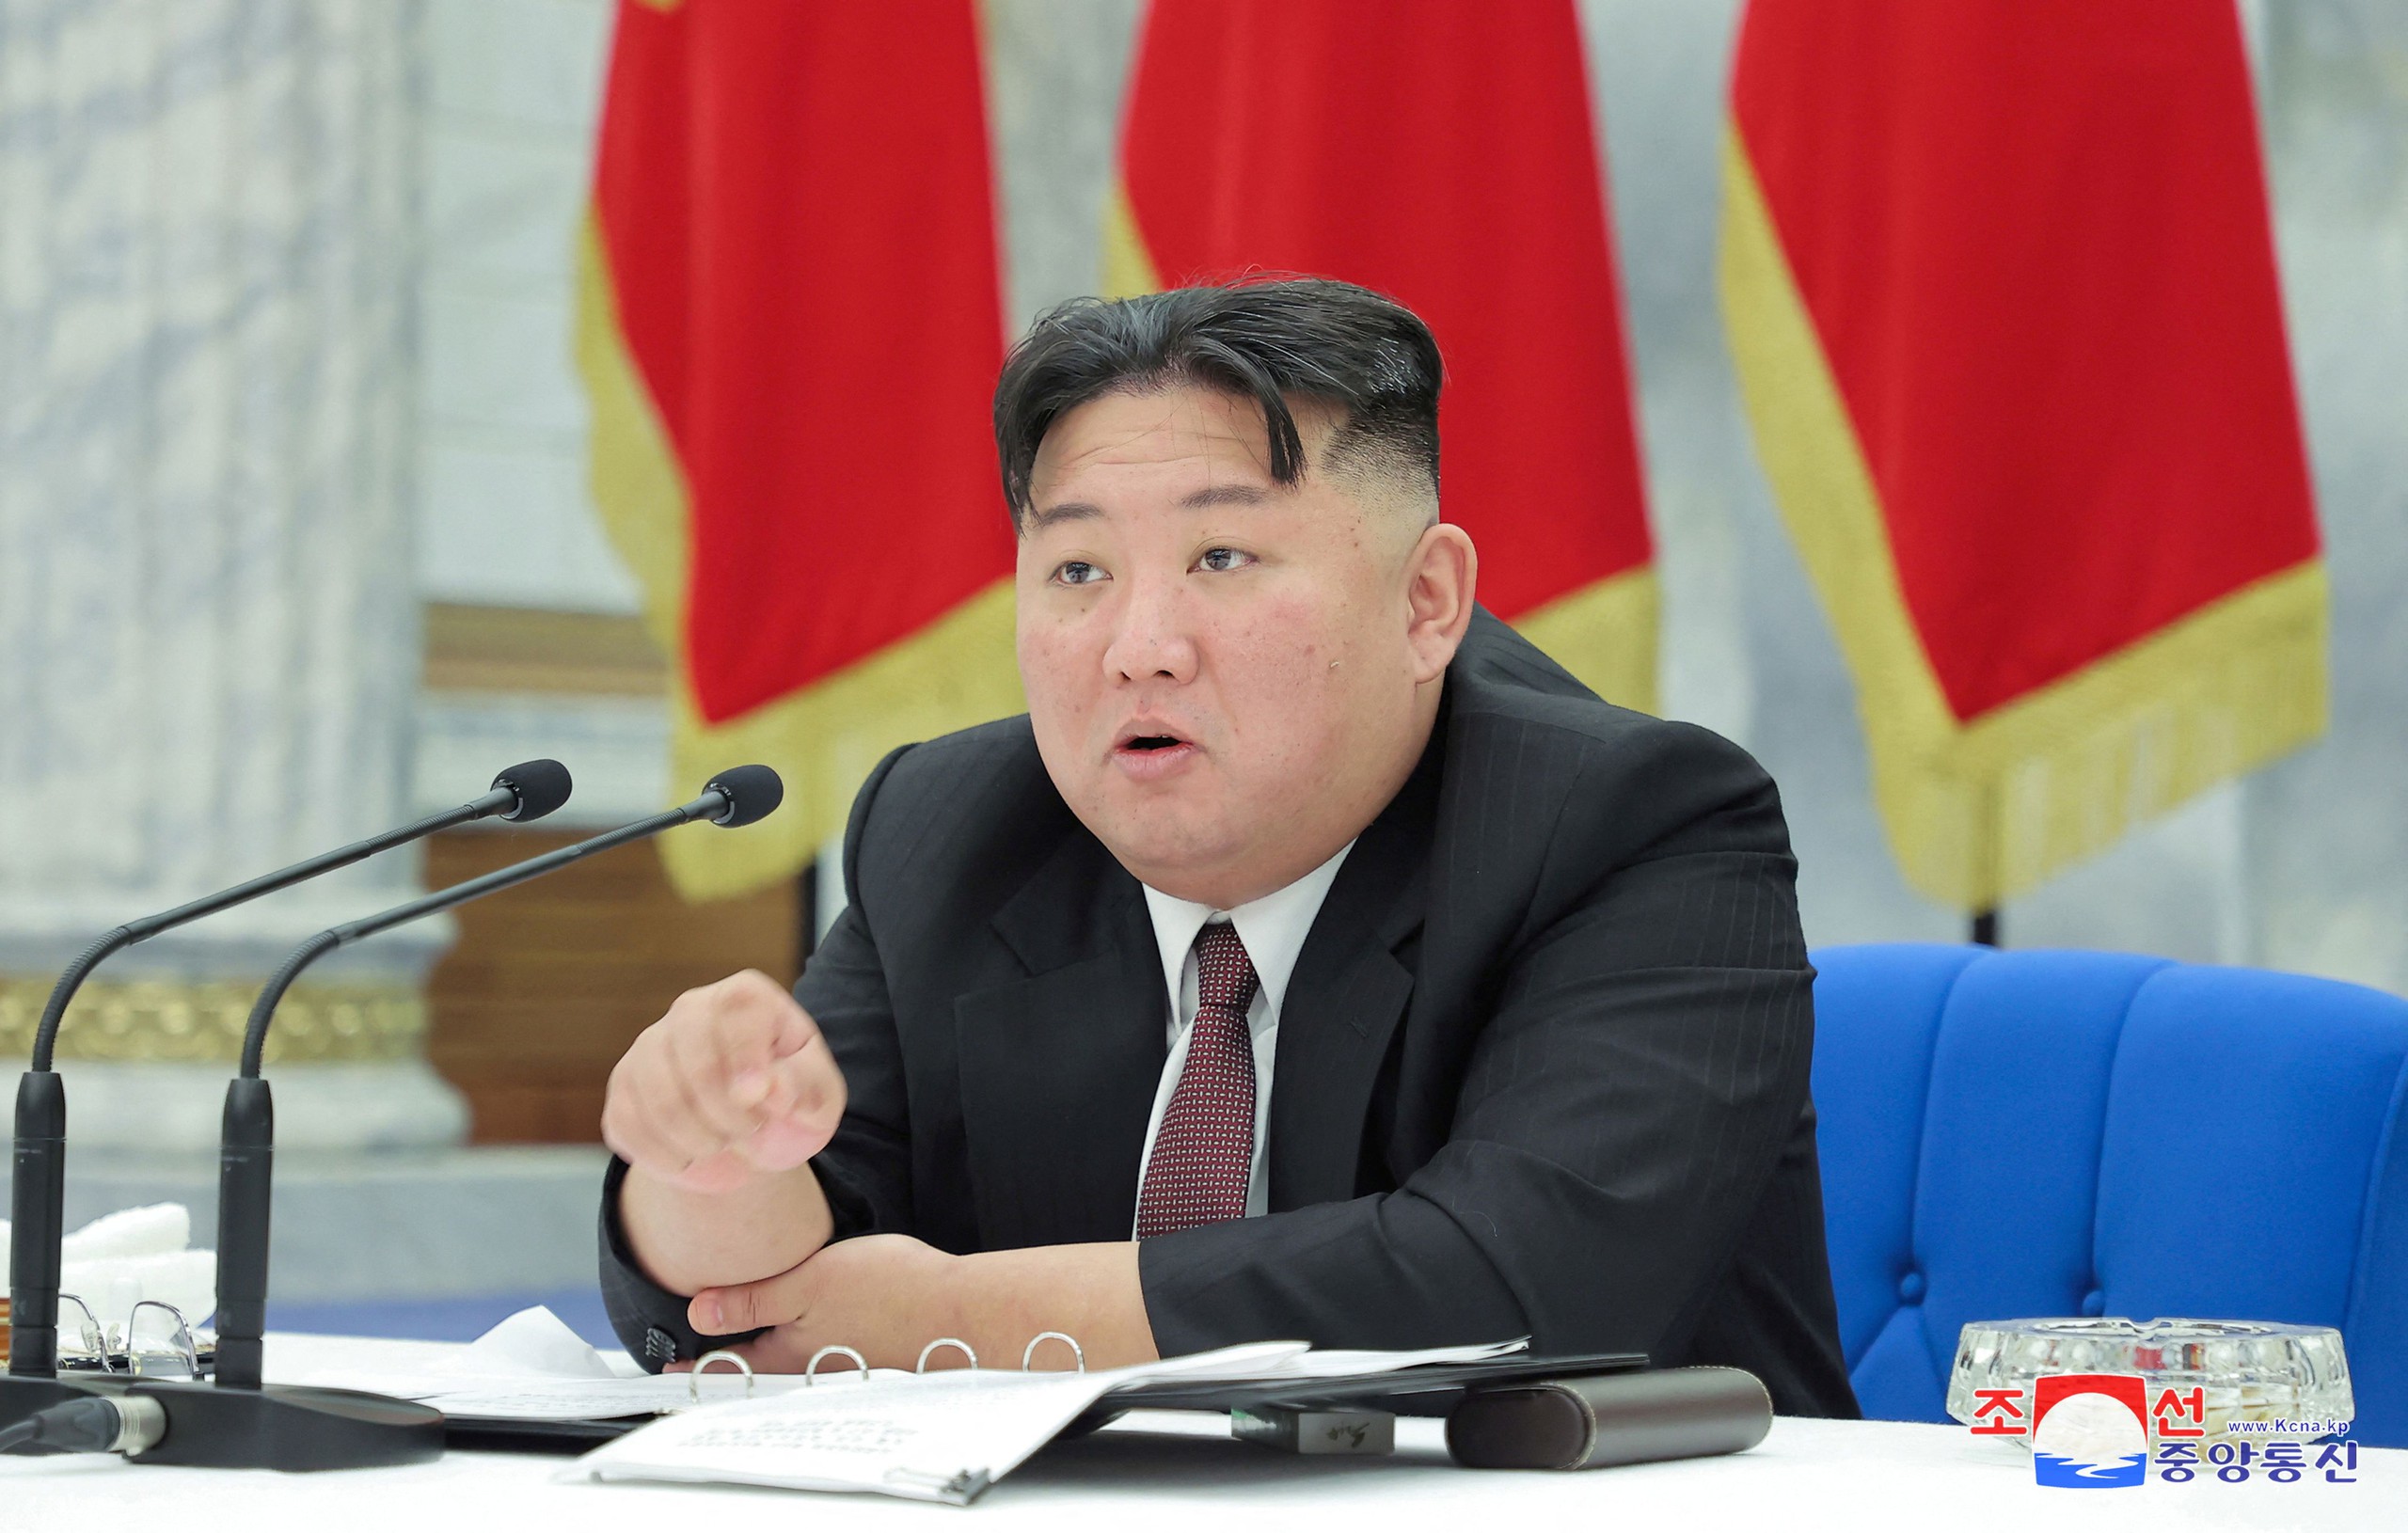 Ông Kim Jong Un mới đây đã đưa ra nhiều tuyên bố cứng rắn về việc thống nhất đất nước (Ảnh: Thông tấn xã Trung ương Triều Tiên)